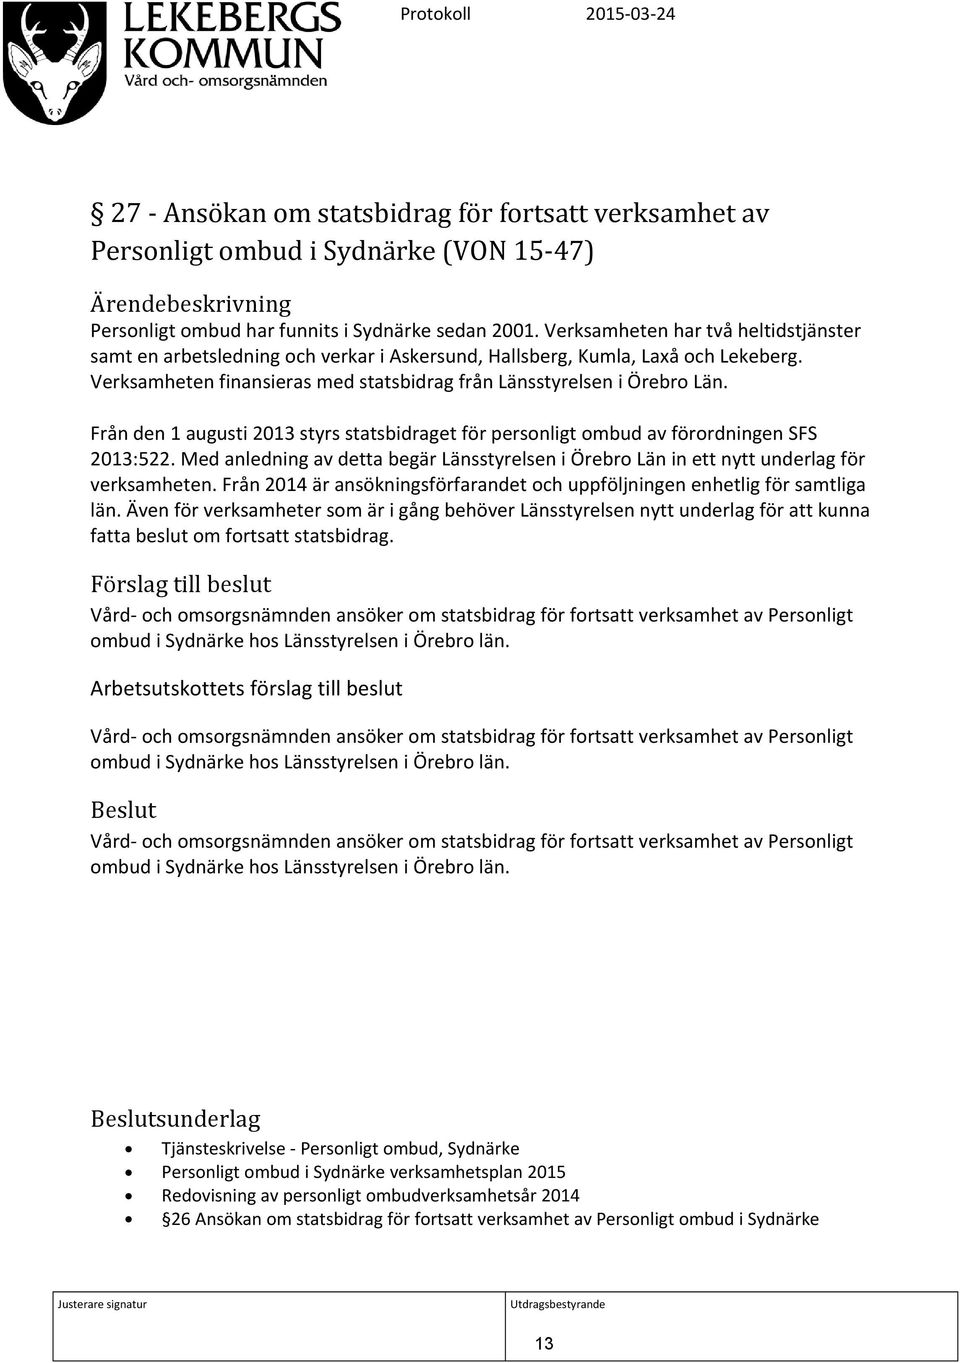 Från den 1 augusti 2013 styrs statsbidraget för personligt ombud av förordningen SFS 2013:522. Med anledning av detta begär Länsstyrelsen i Örebro Län in ett nytt underlag för verksamheten.